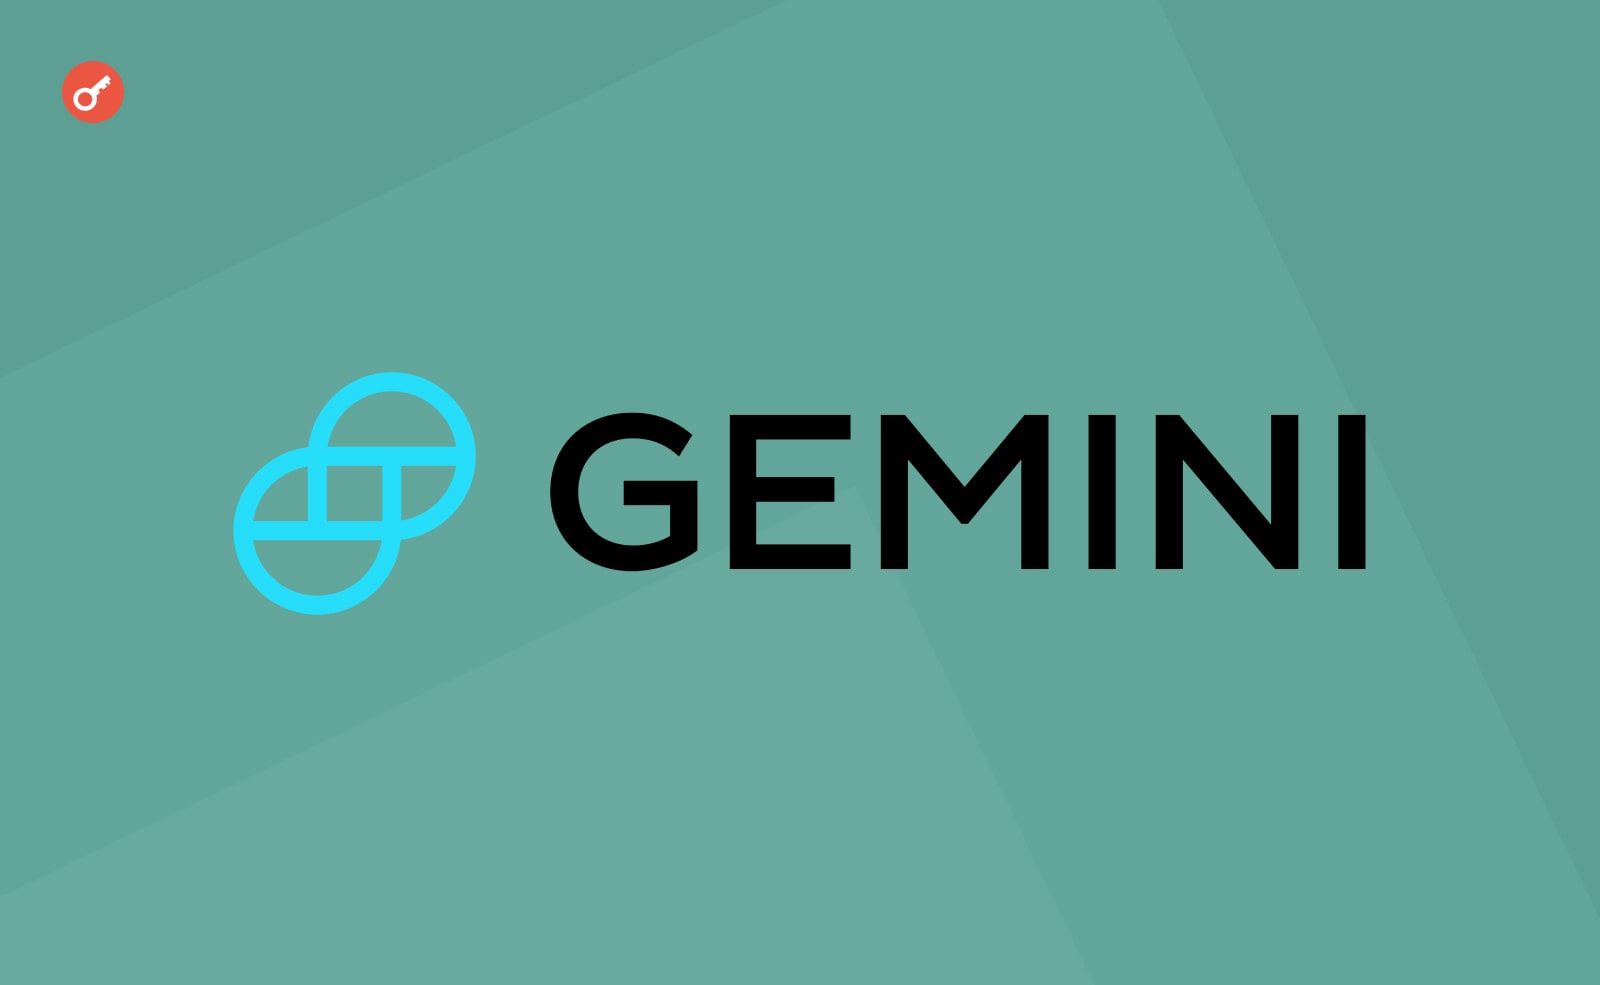 Gemini офіційно закриває програму Earn. Головний колаж новини.